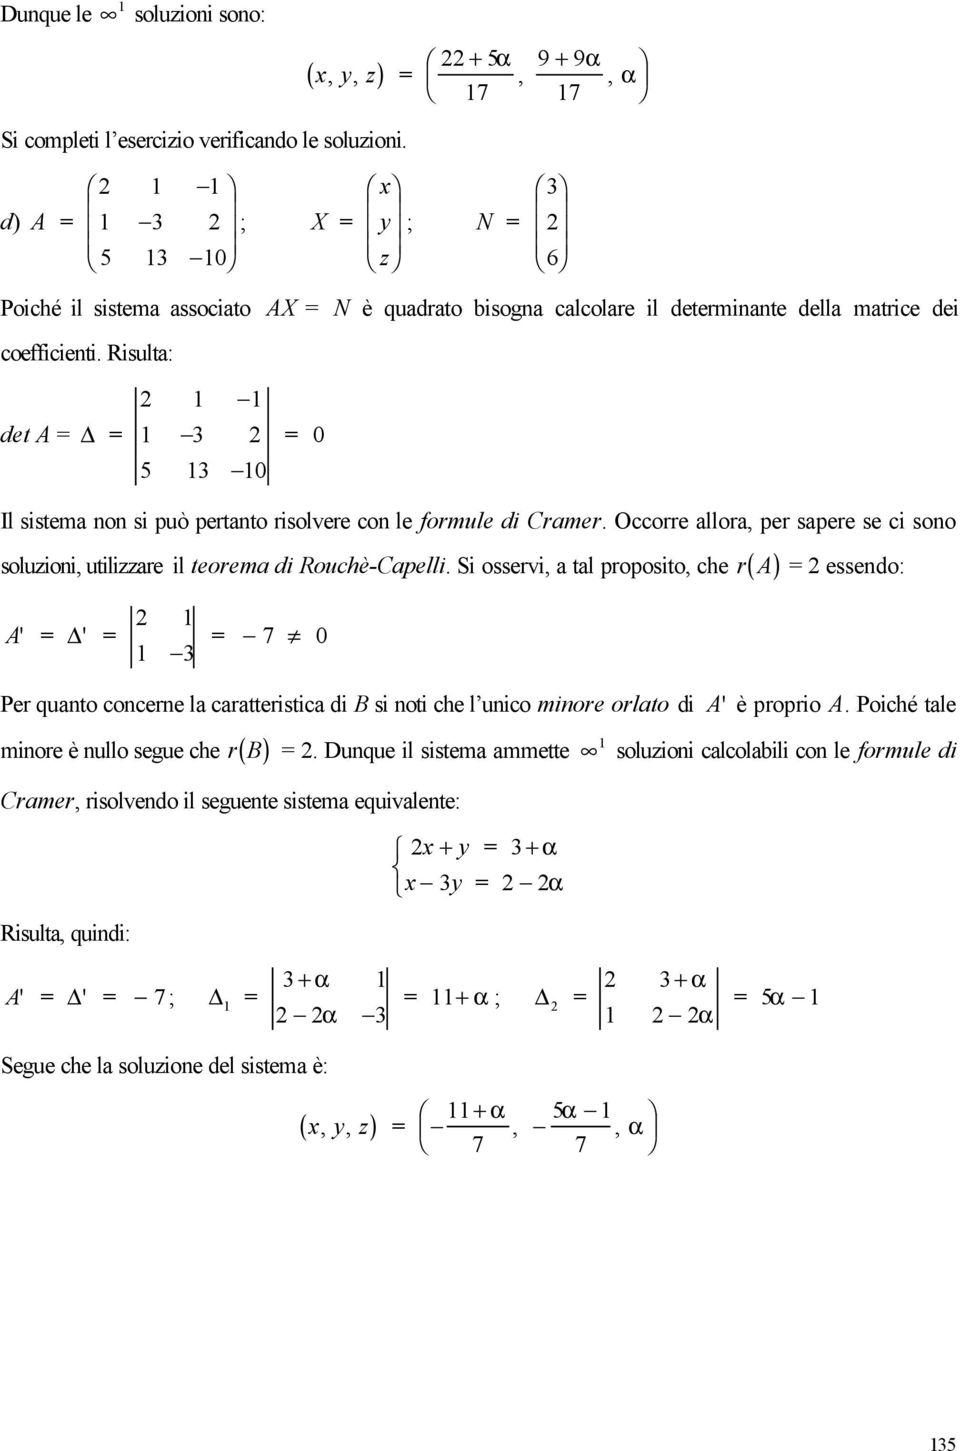 Rsulta: 2 det A 3 2 5 3 0 0 Il sstema o s può pertato rsolvere co le formule d Cramer. Occorre allora, per sapere se c soo soluzo, utlzzare l teorema d Rouchè-Capell.